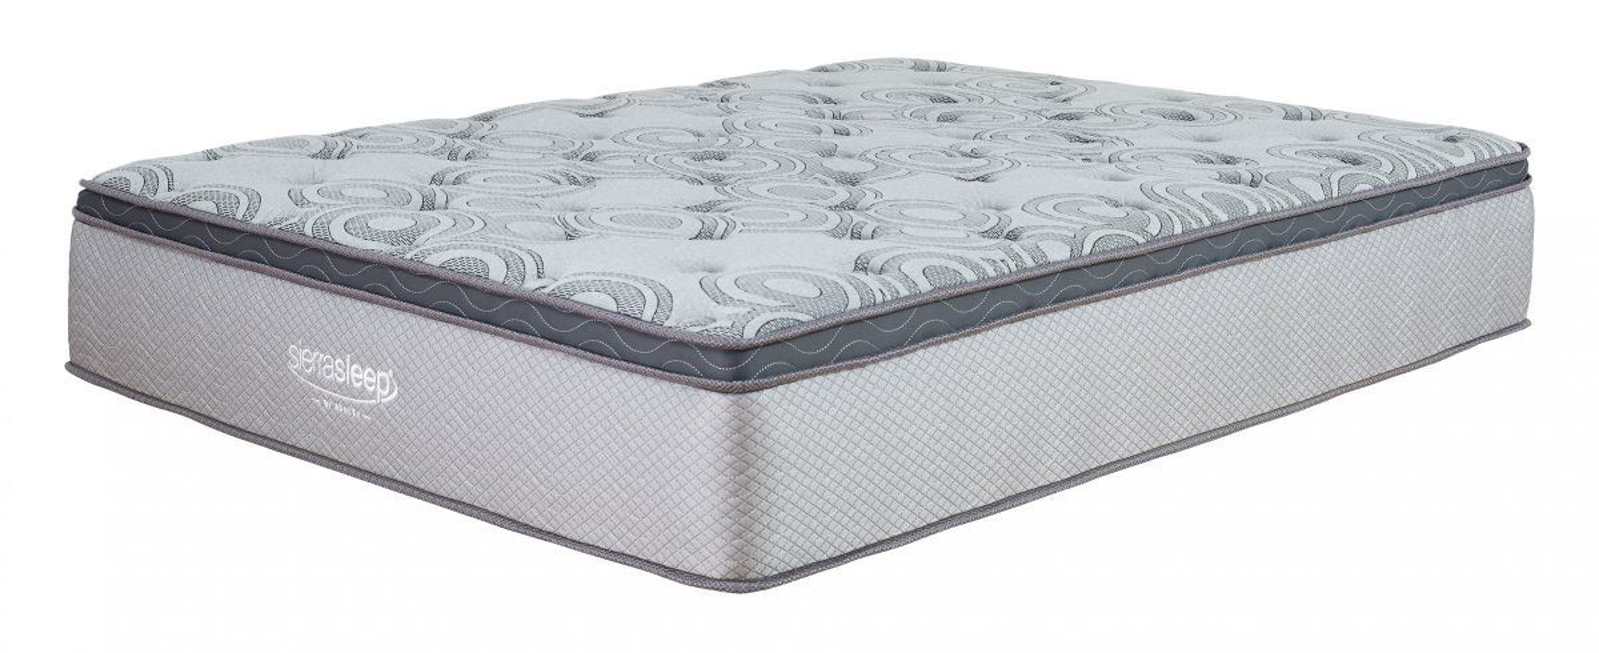 augusta queen mattress & box springs review